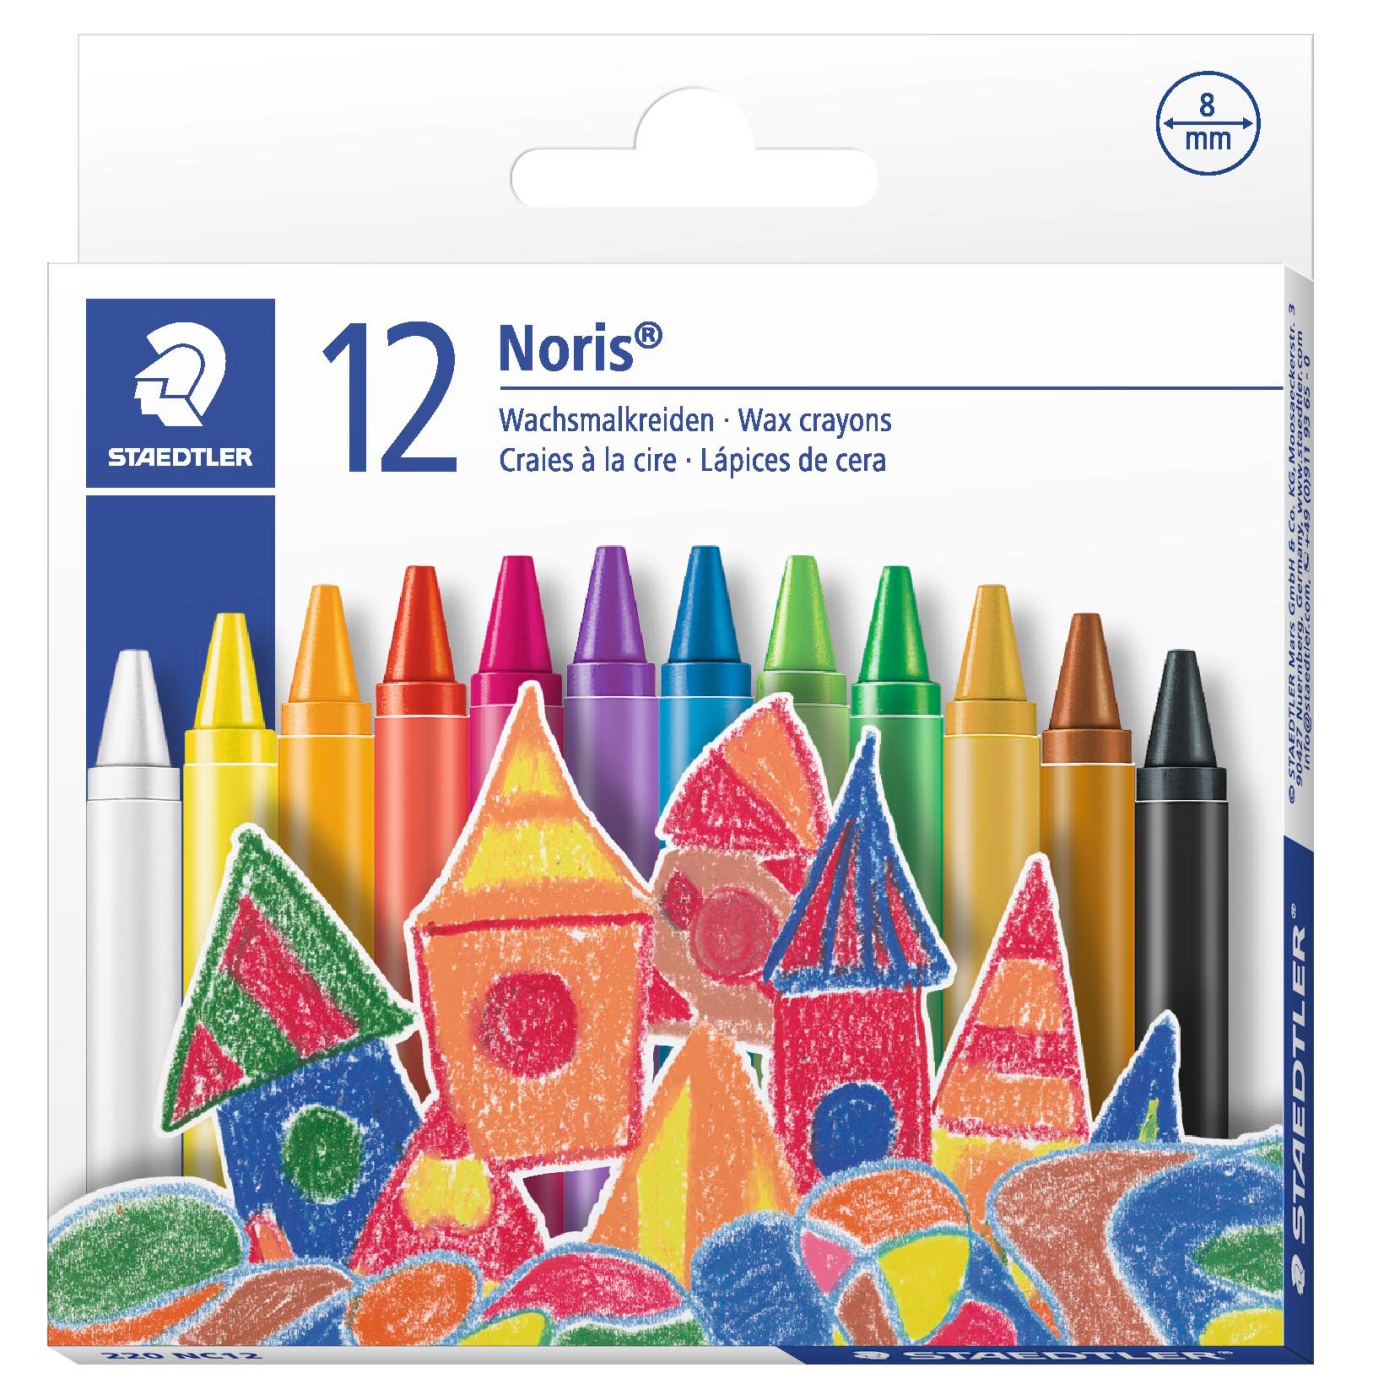 Bic Kids Paint Set with Art Supplies 3 pack 36 pcs (12 each crayons, felt  tip pens and colour pencils)